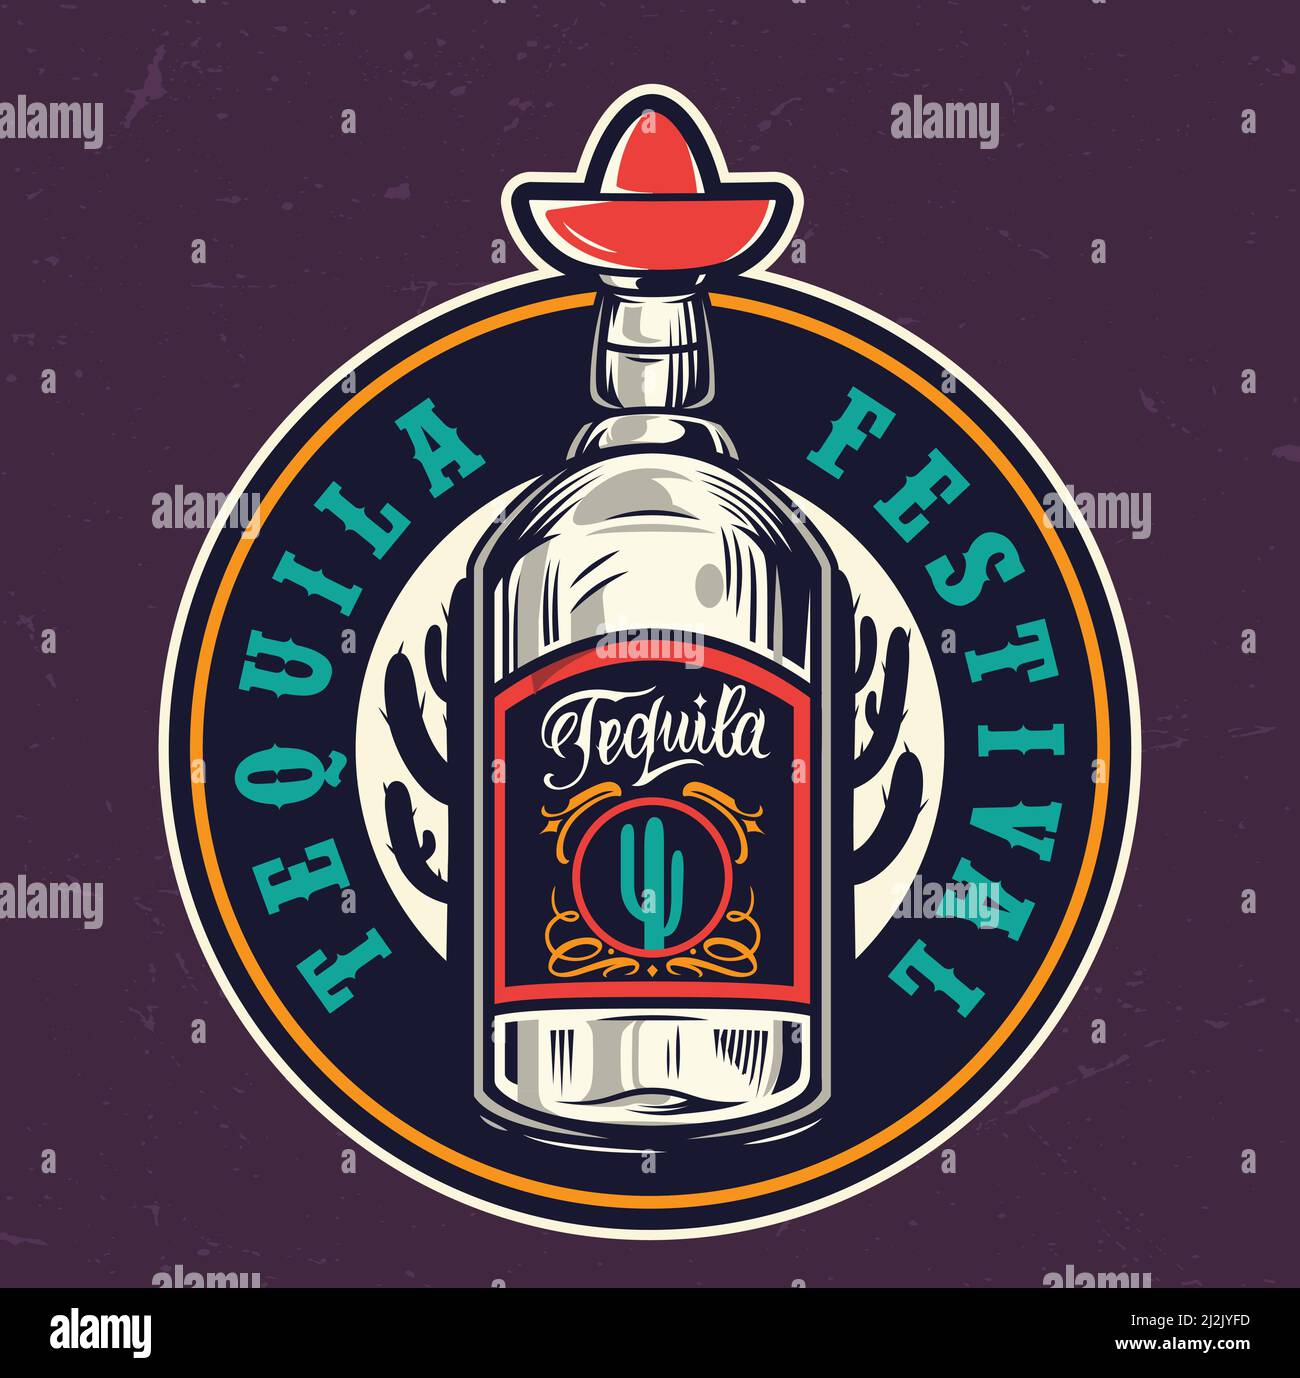 Festival mexicano de tequila, colorida etiqueta redonda con botella de tequila ilustración vectorial aislada de estilo vintage Ilustración del Vector